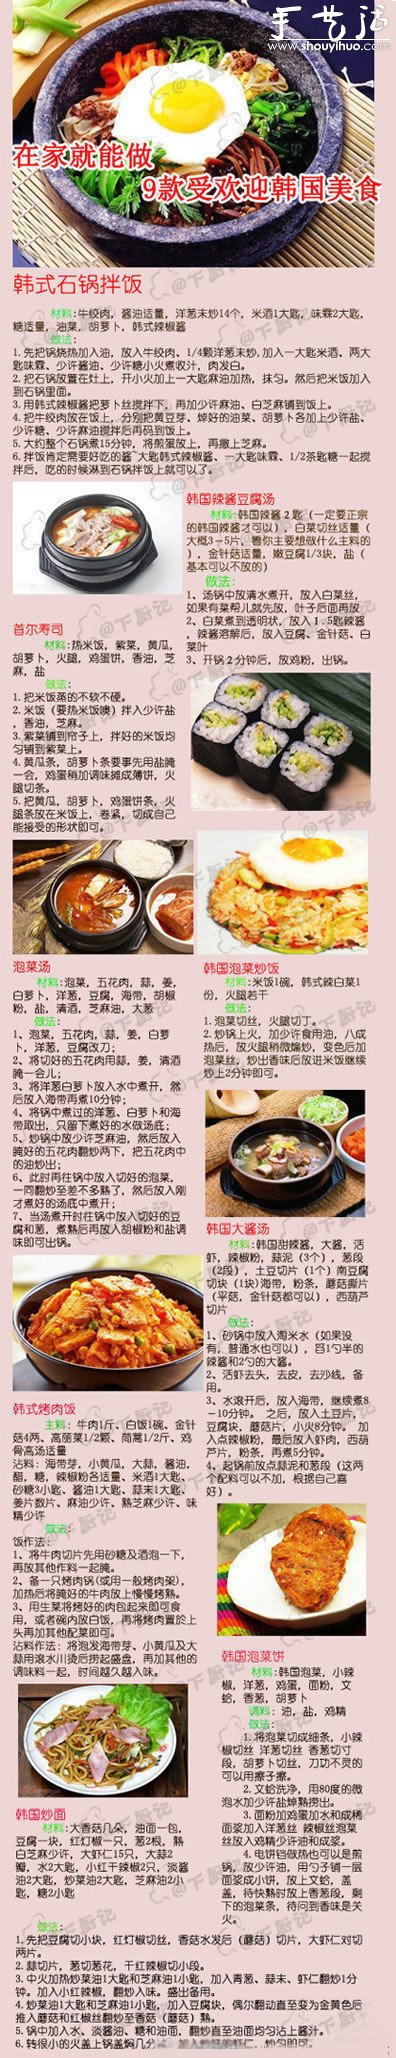 韩国料理做法大全 韩国料理菜谱全囊括